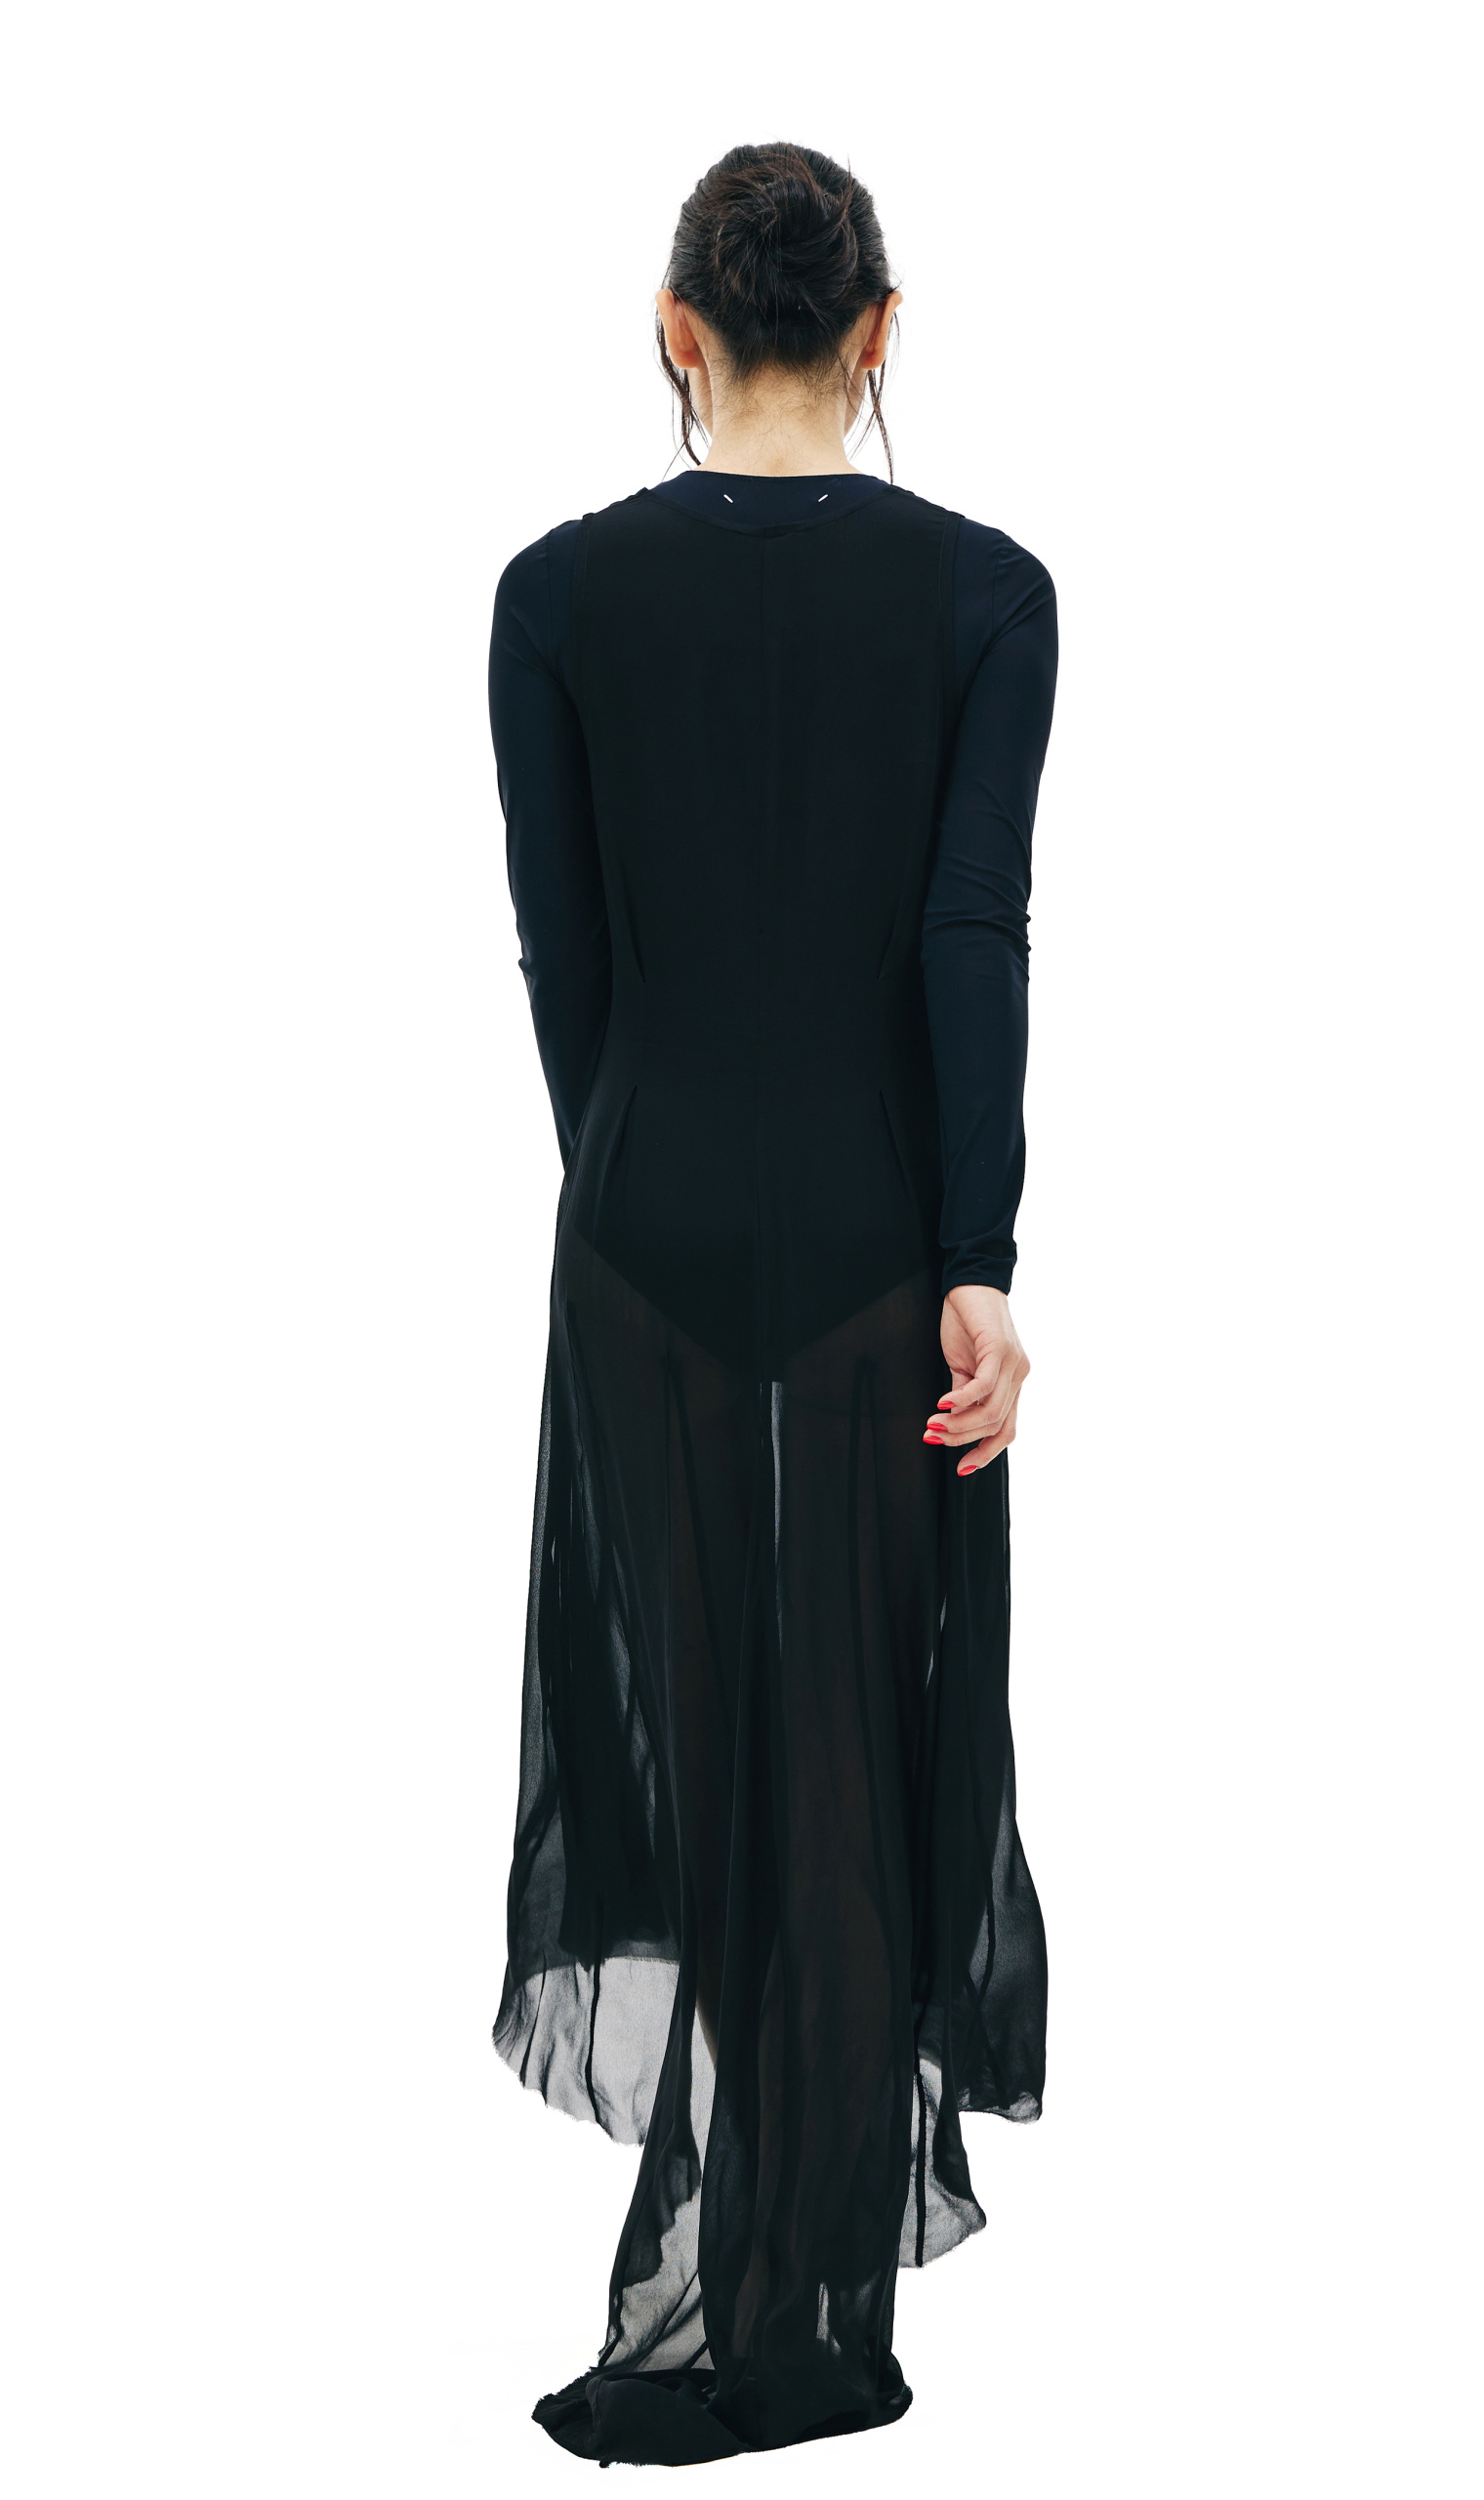 Ann Demeulemeester Translucent Elongated Black Dress